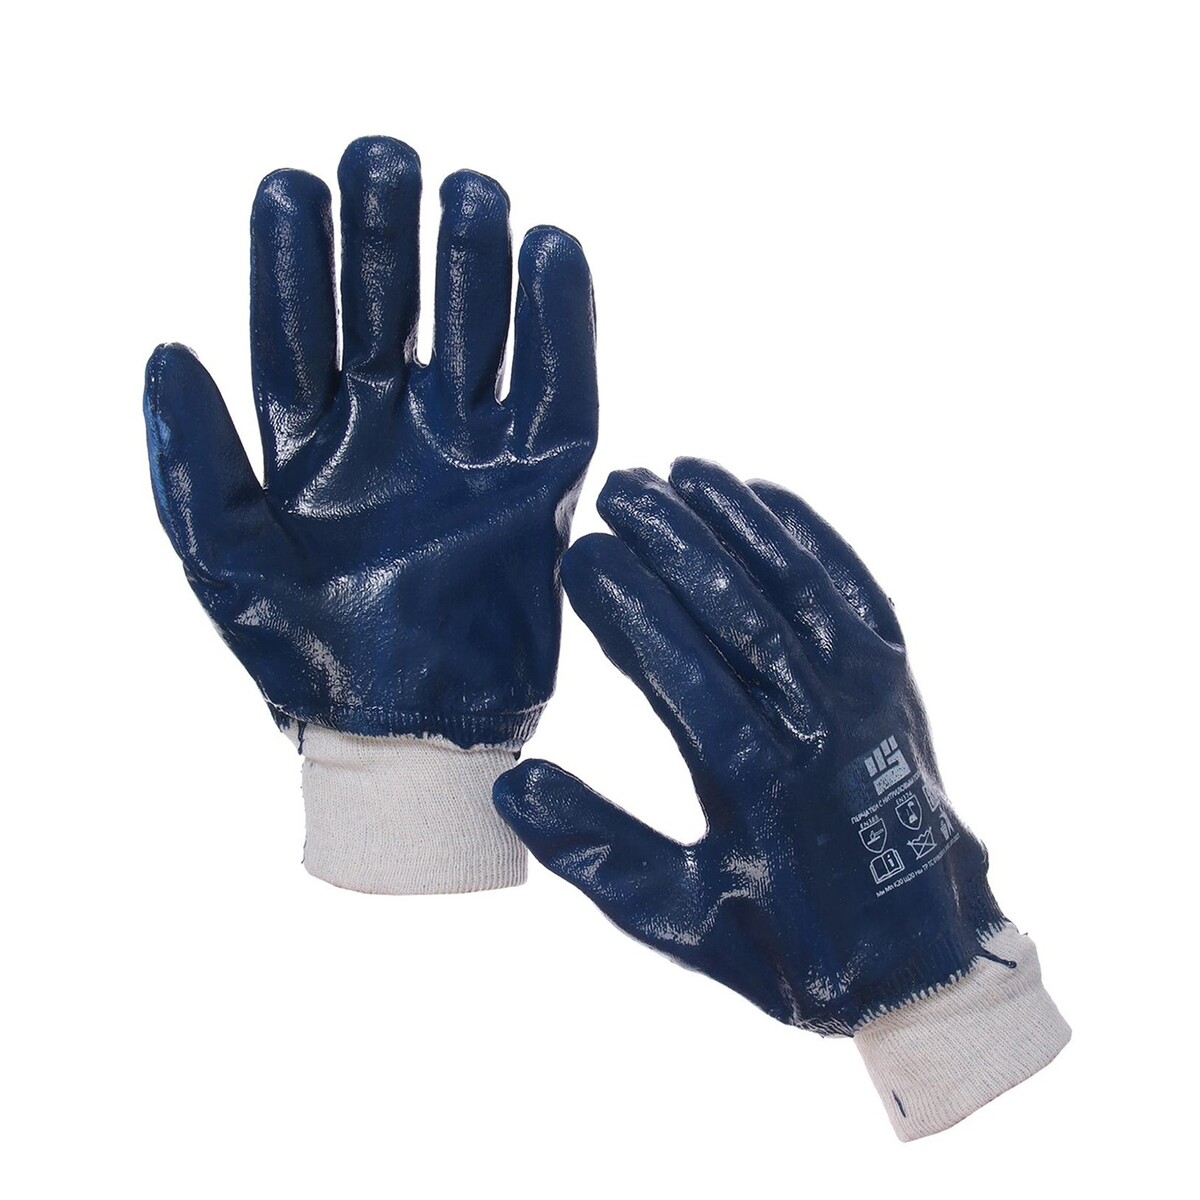 Перчатки, х/б, с нитриловым обливом, размер 9, с манжетой, синие 